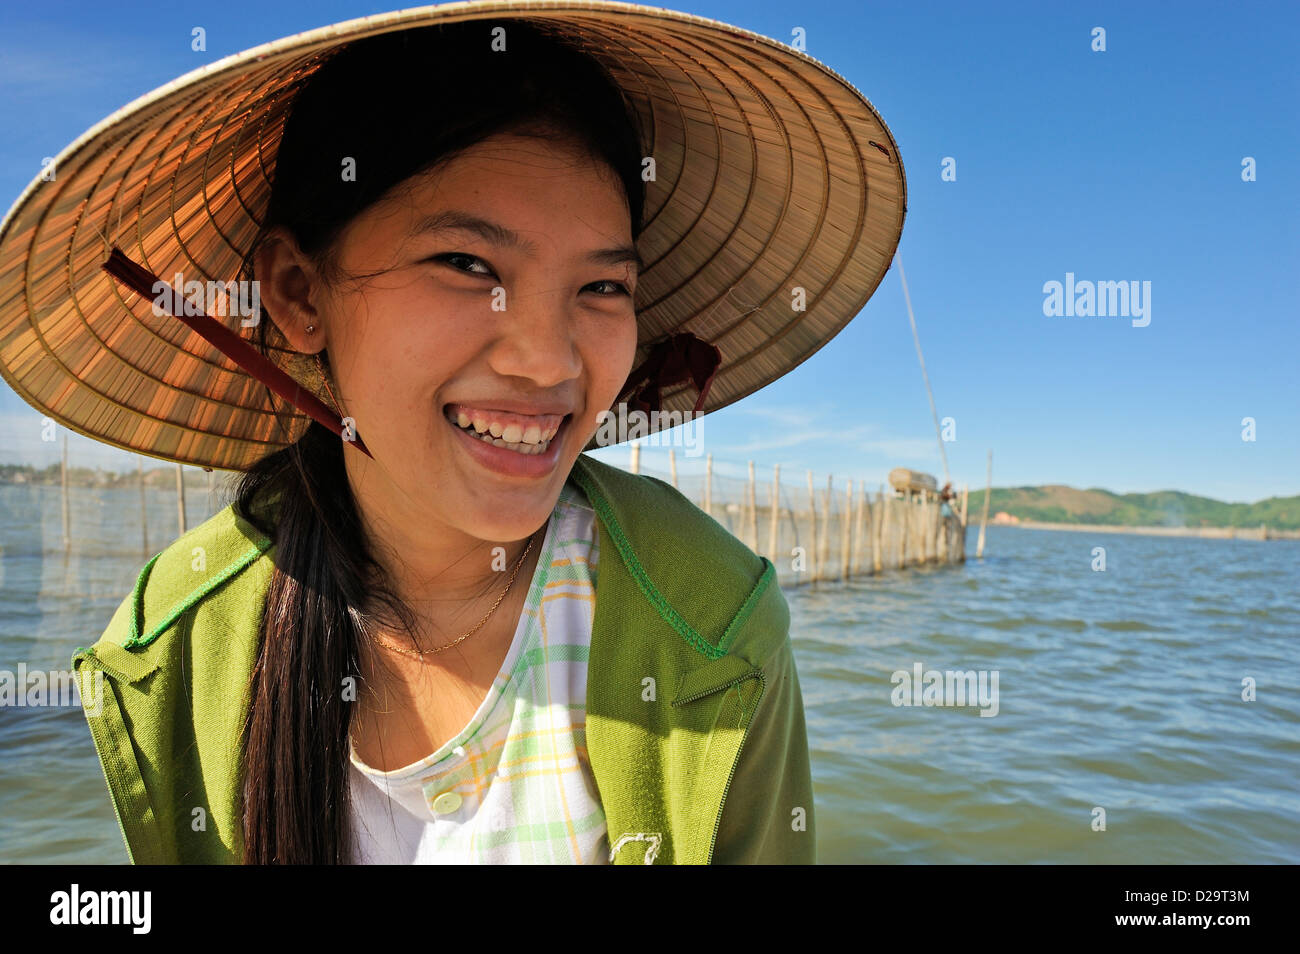 Smiling fille vietnamienne (16), Phu Loc laguna, Vietnam Banque D'Images